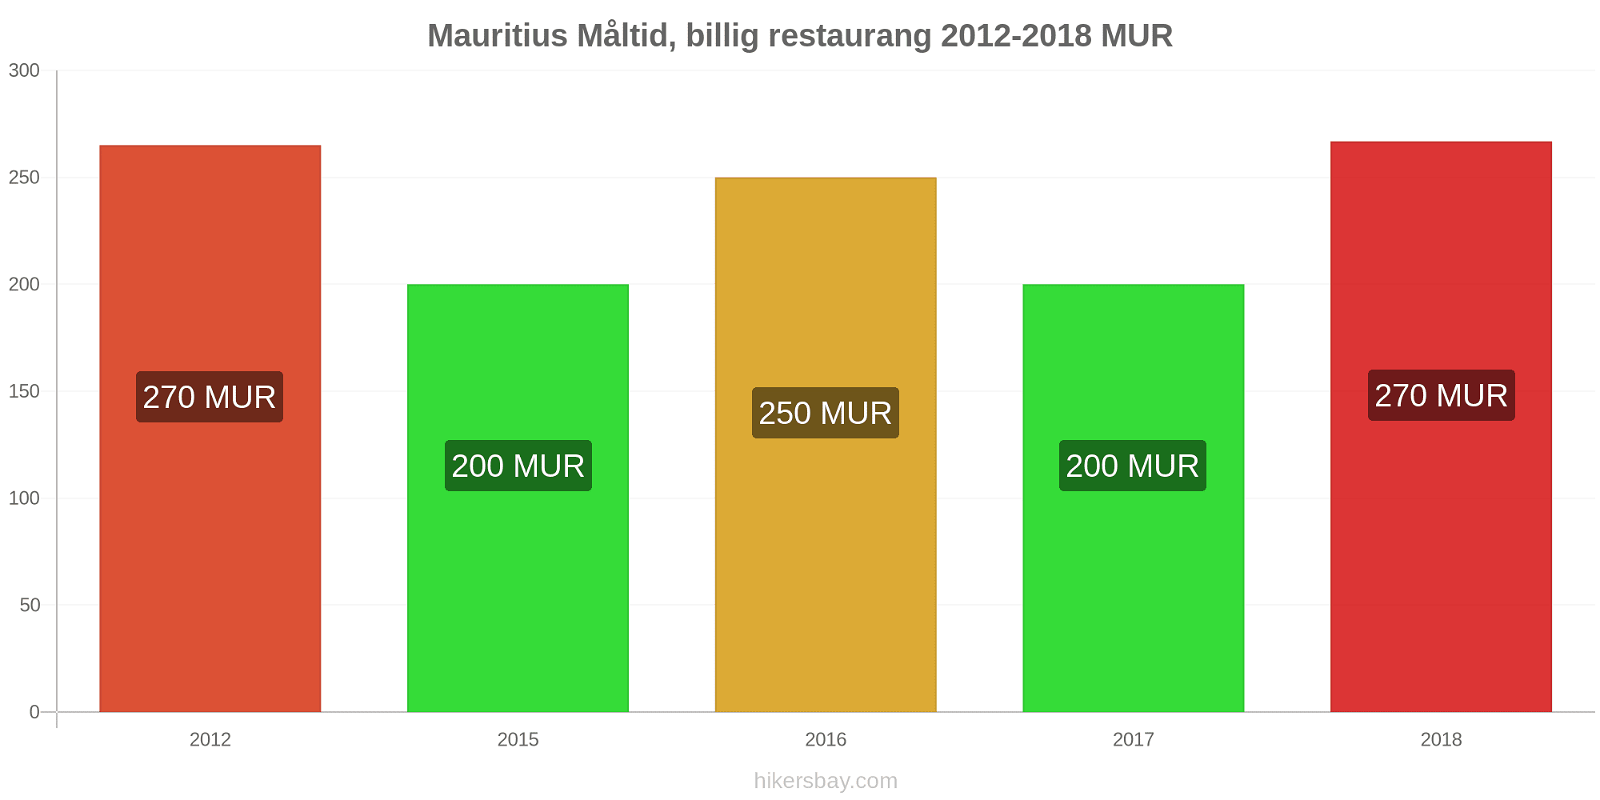 Mauritius prisändringar Måltid i en billig restaurang hikersbay.com